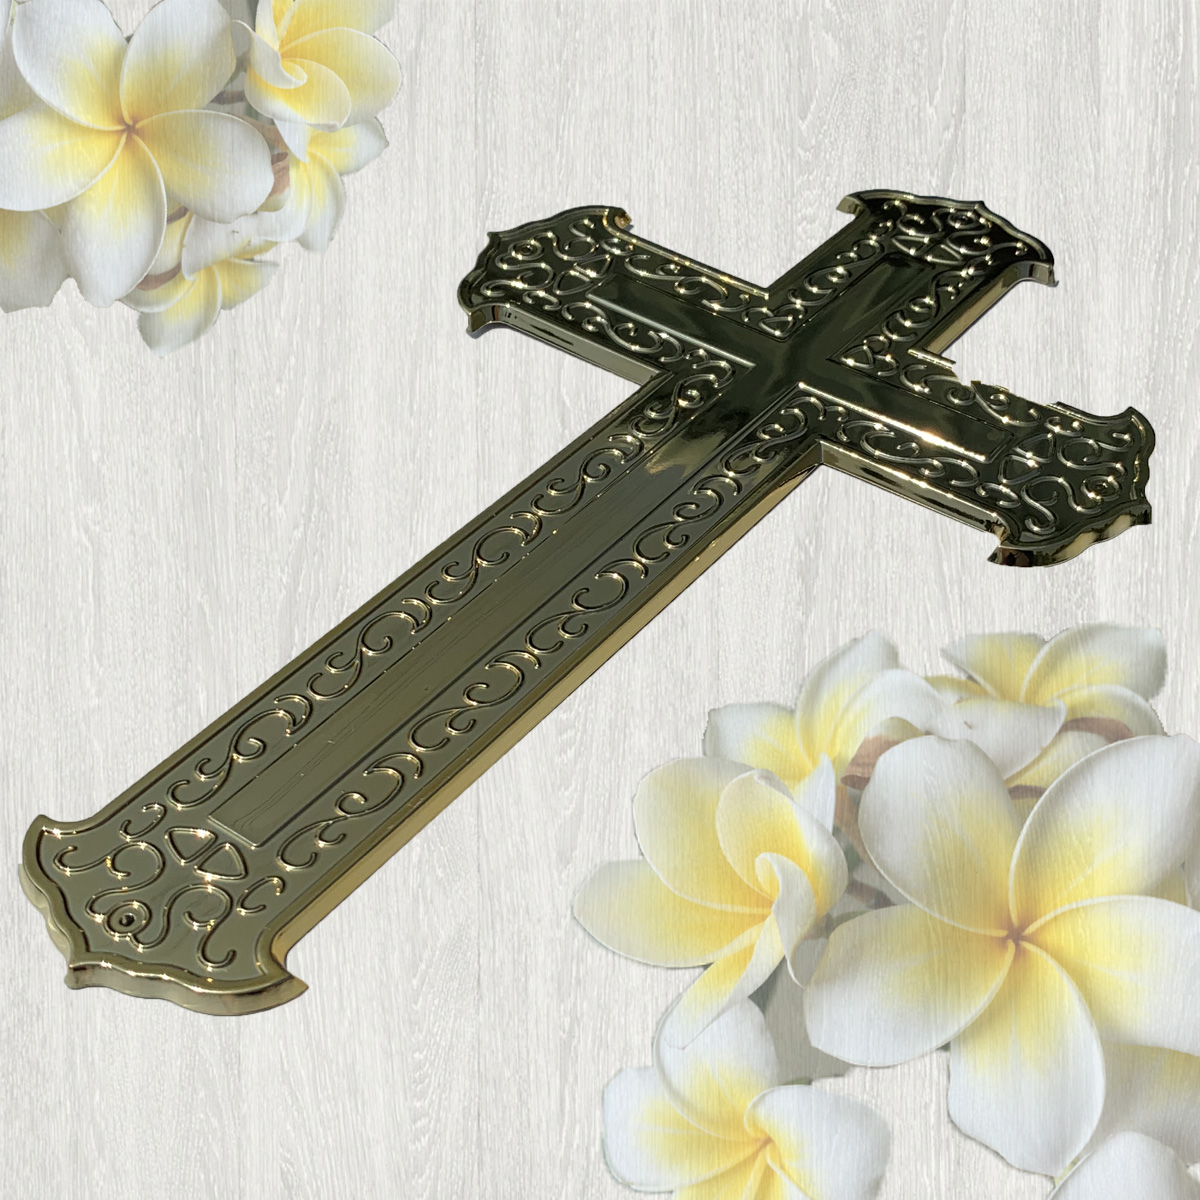 【入殮出】十字架基督天主火化平蓋胡桃木扶手棺2.1尺